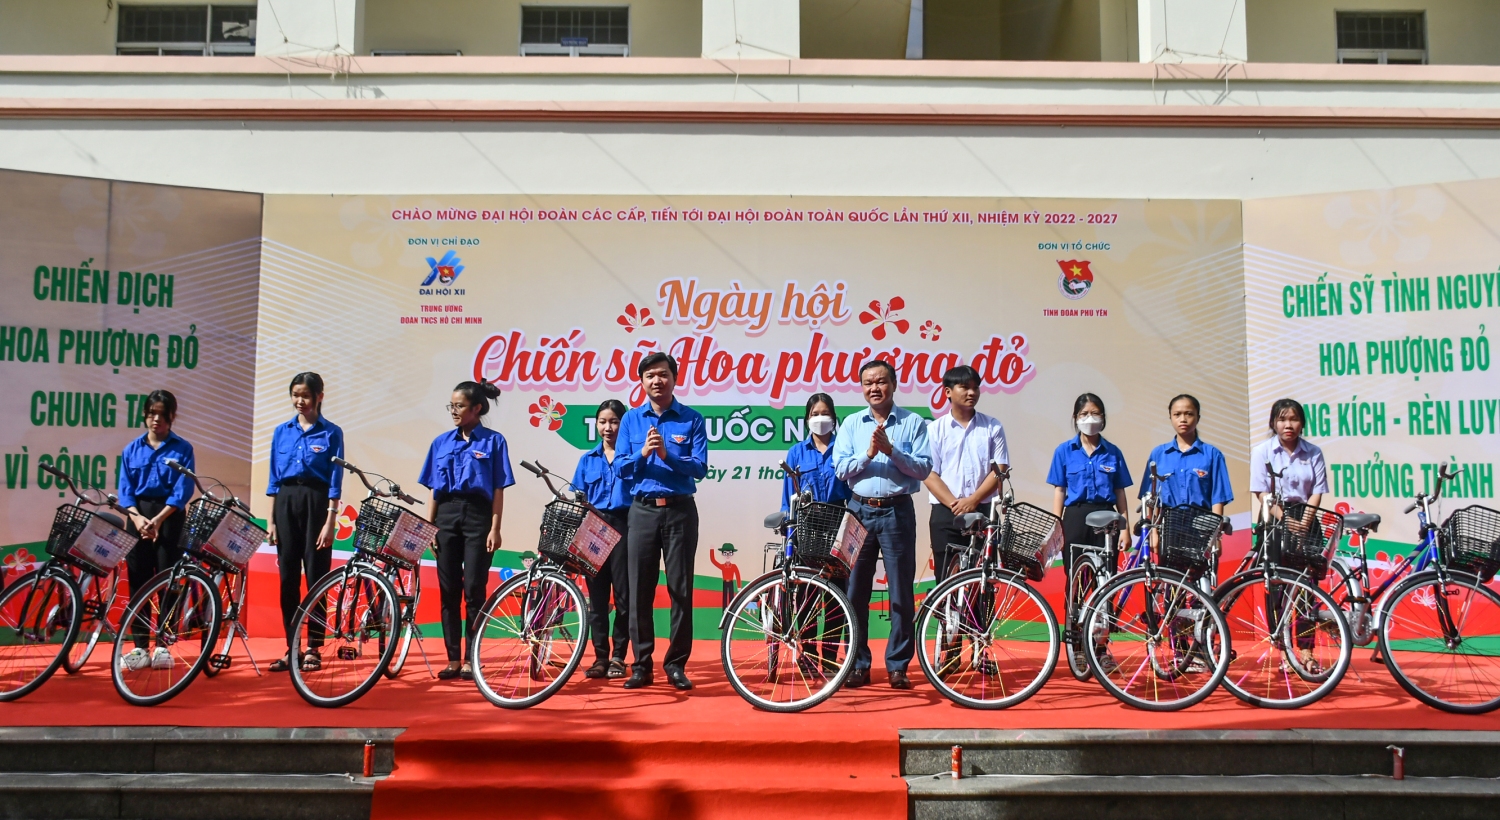 Đ/c Nguyễn Minh Triết - Bí thư Ban Chấp hành Trung ương Đoàn, Chủ tịch Hội Sinh viên Việt Nam và Đ/c Đào Mỹ - Tỉnh ủy viên, Phó Chủ tịch UBND tỉnh trao tặng xe đạp cho các em học sinh khó khăn.